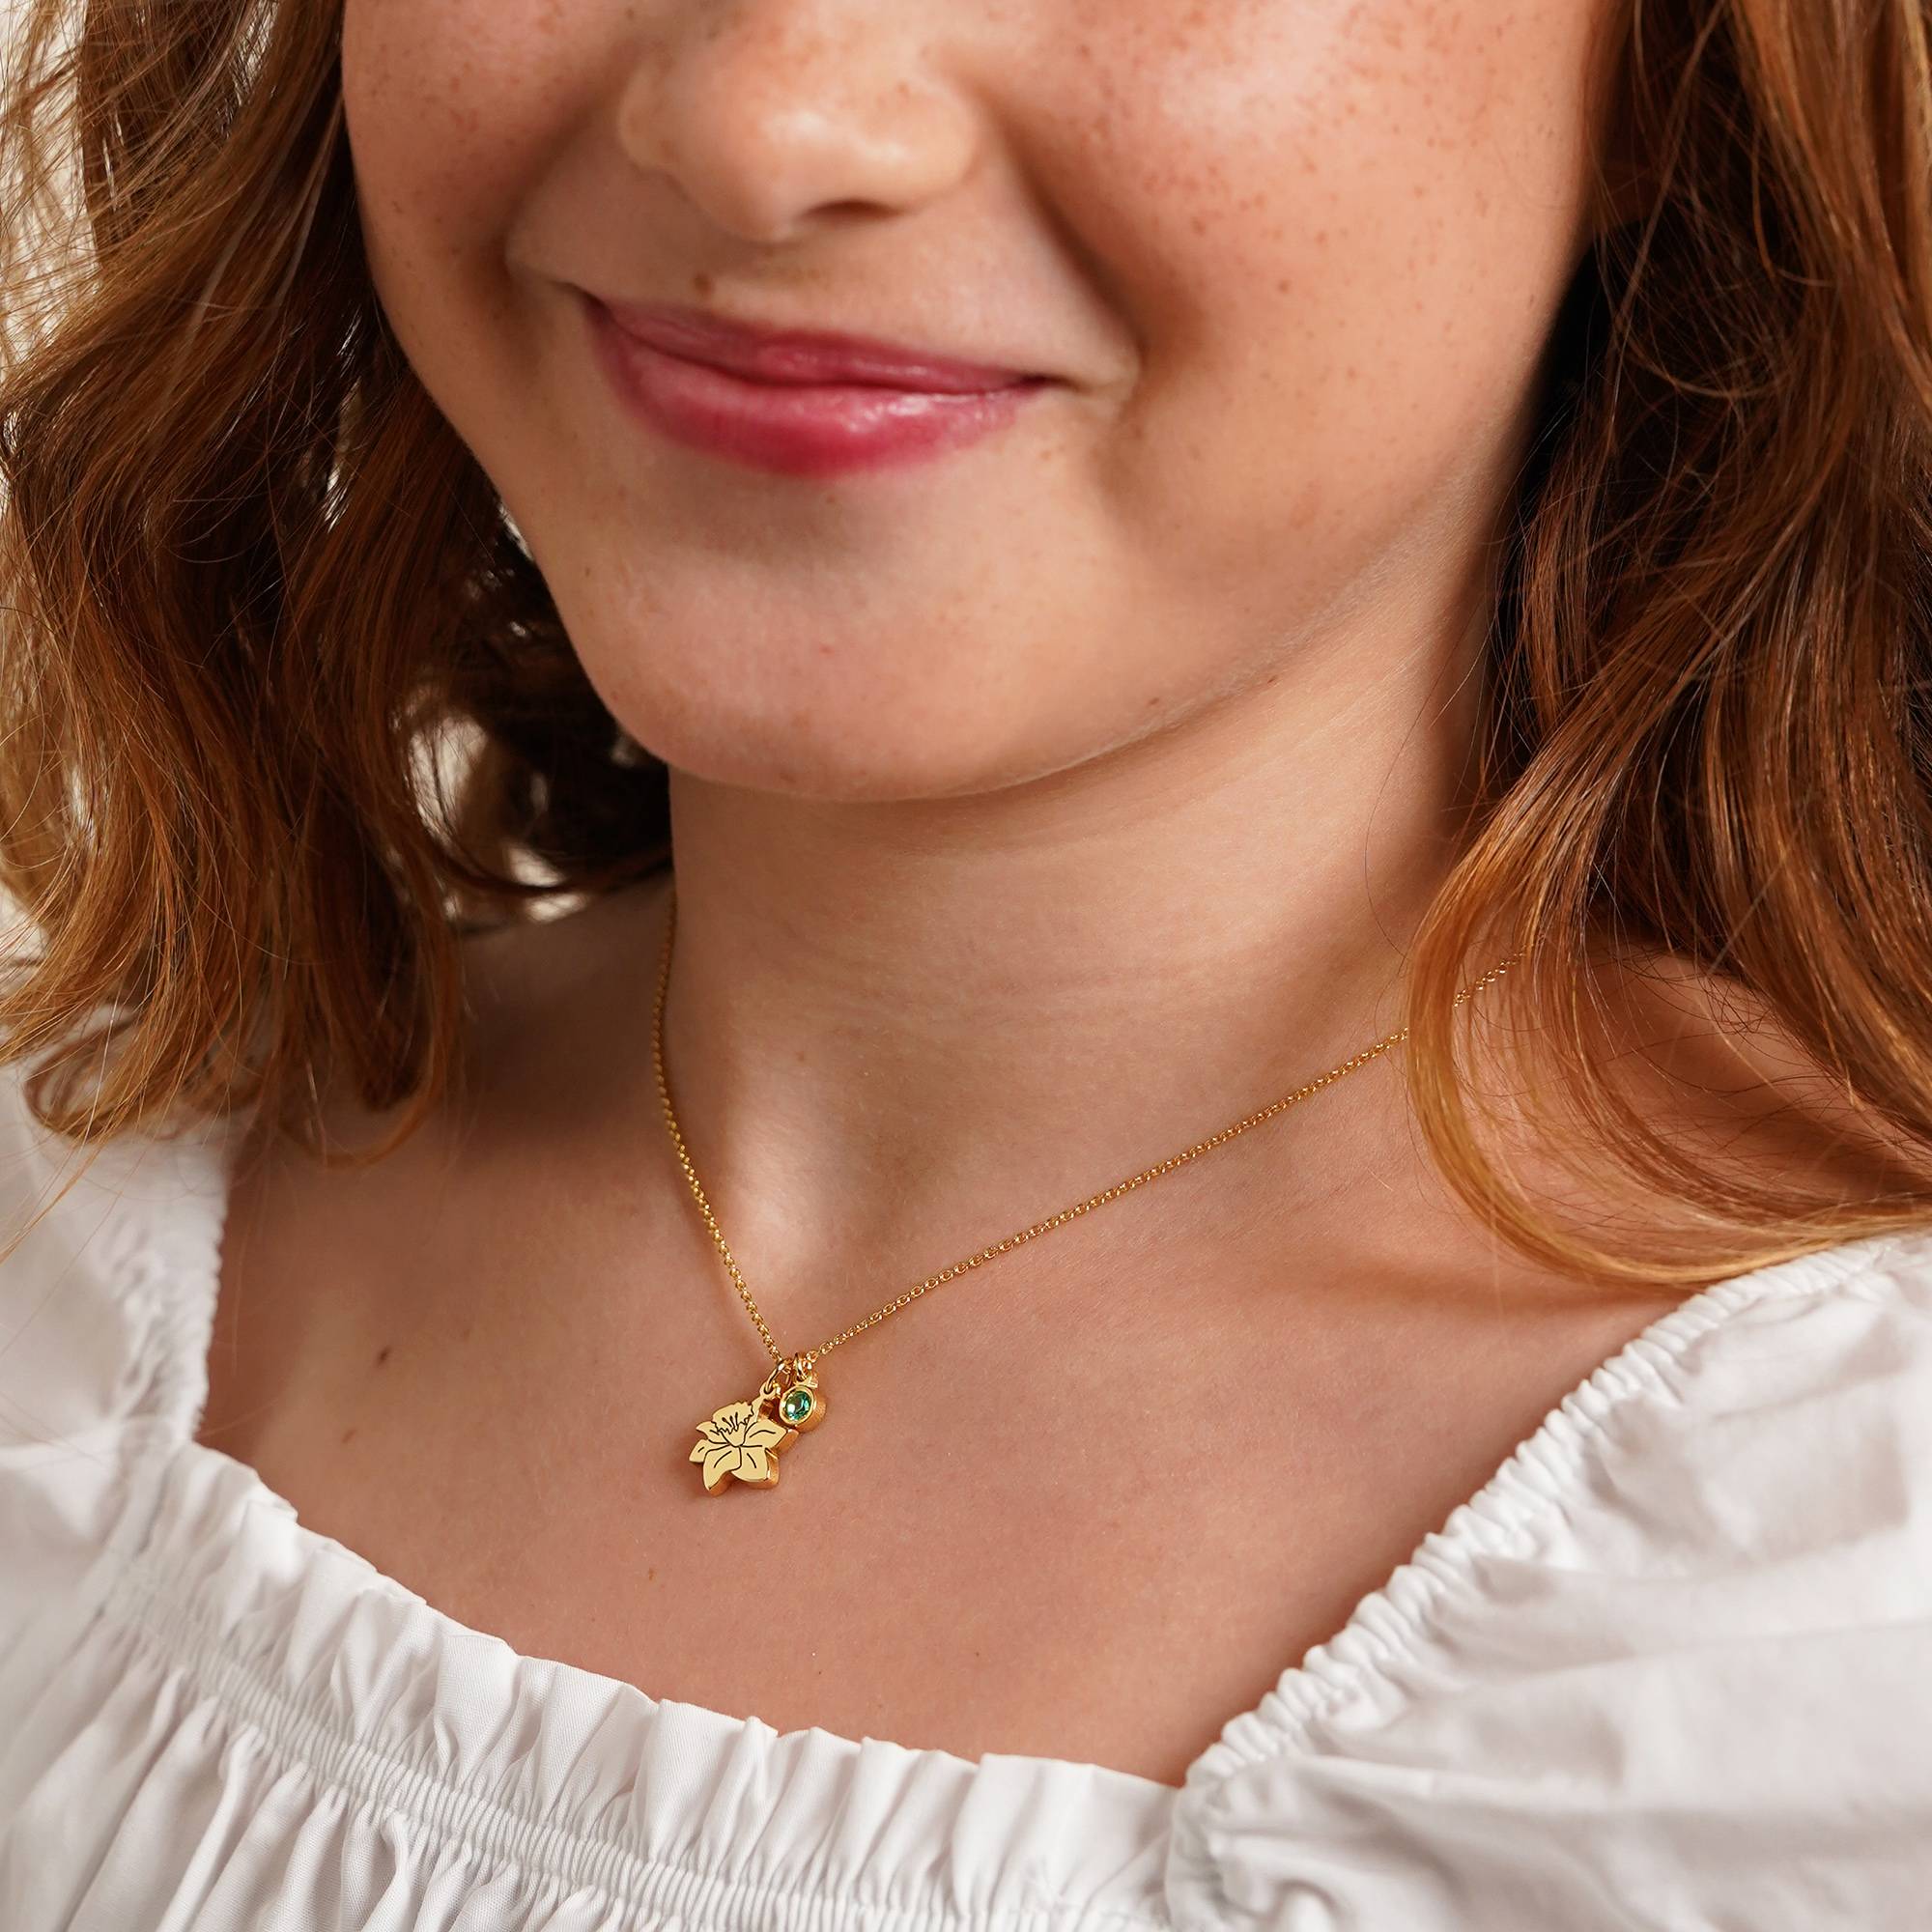 Blühende Geburtsblume Initial-Halskette mit Geburtsstein für Mädchen - 750er Gold-Vermeil-8 Produktfoto